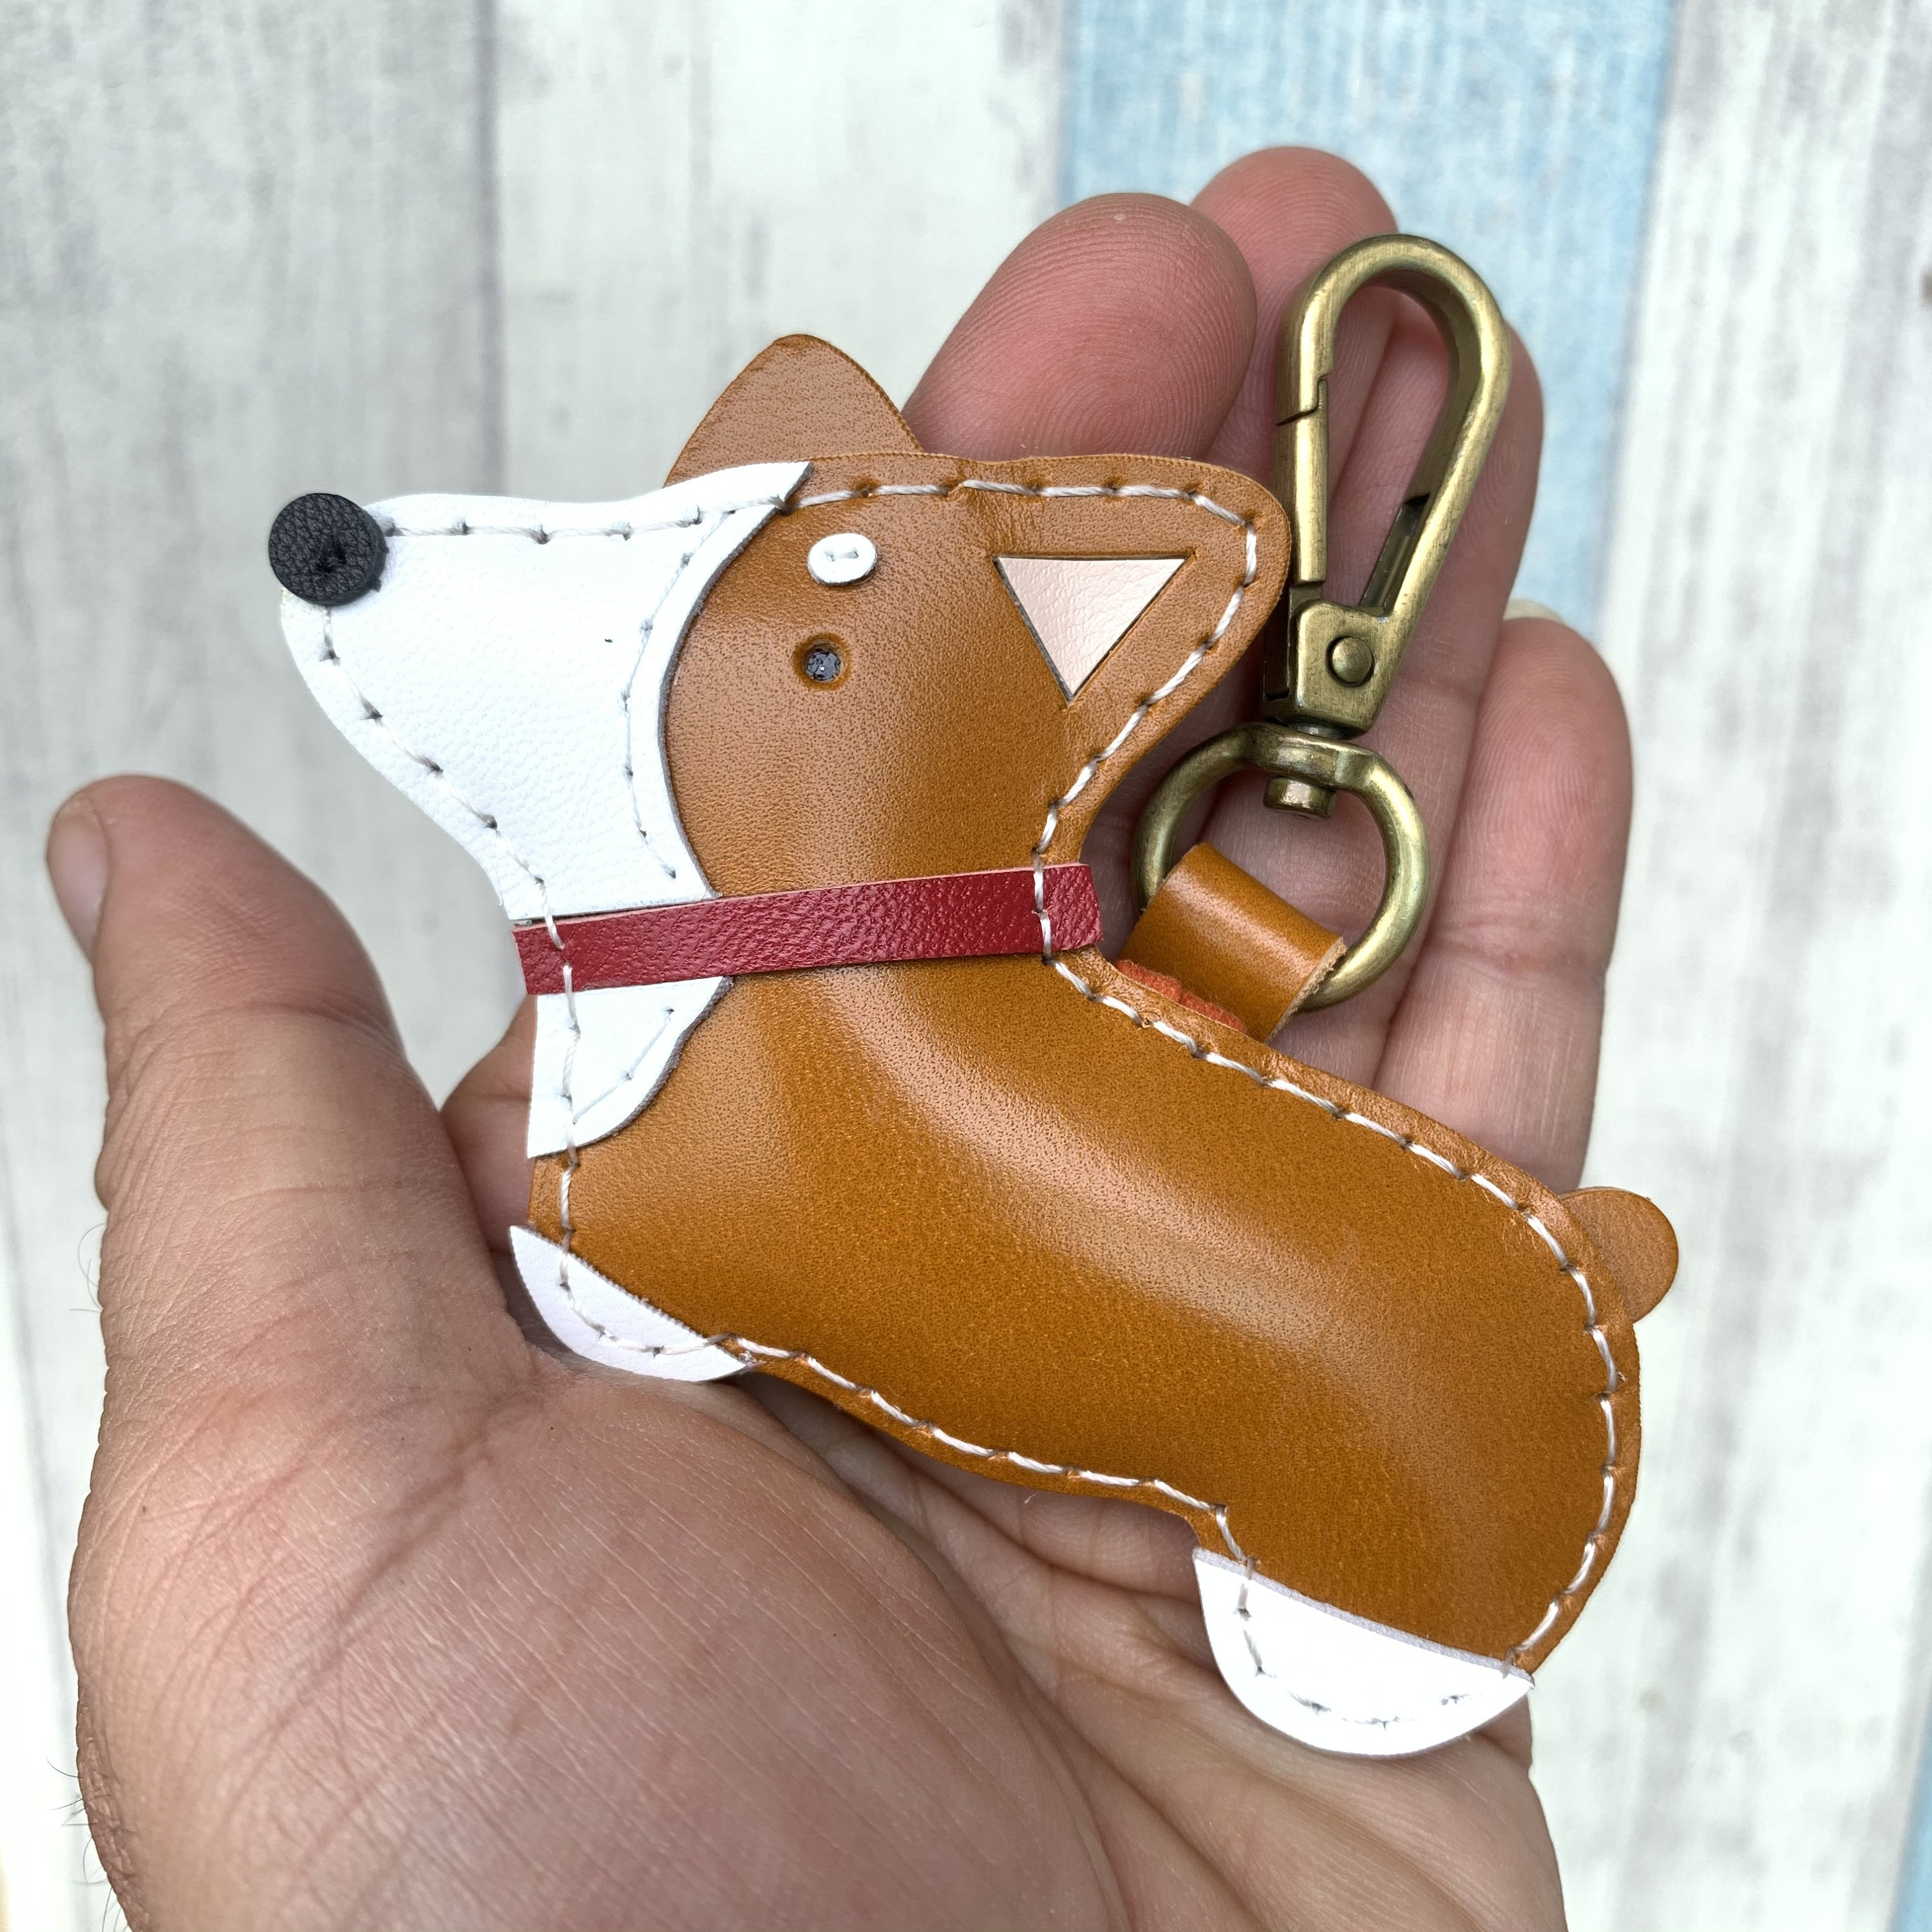 Customized Handmade Leather Corgi Dog Keychain